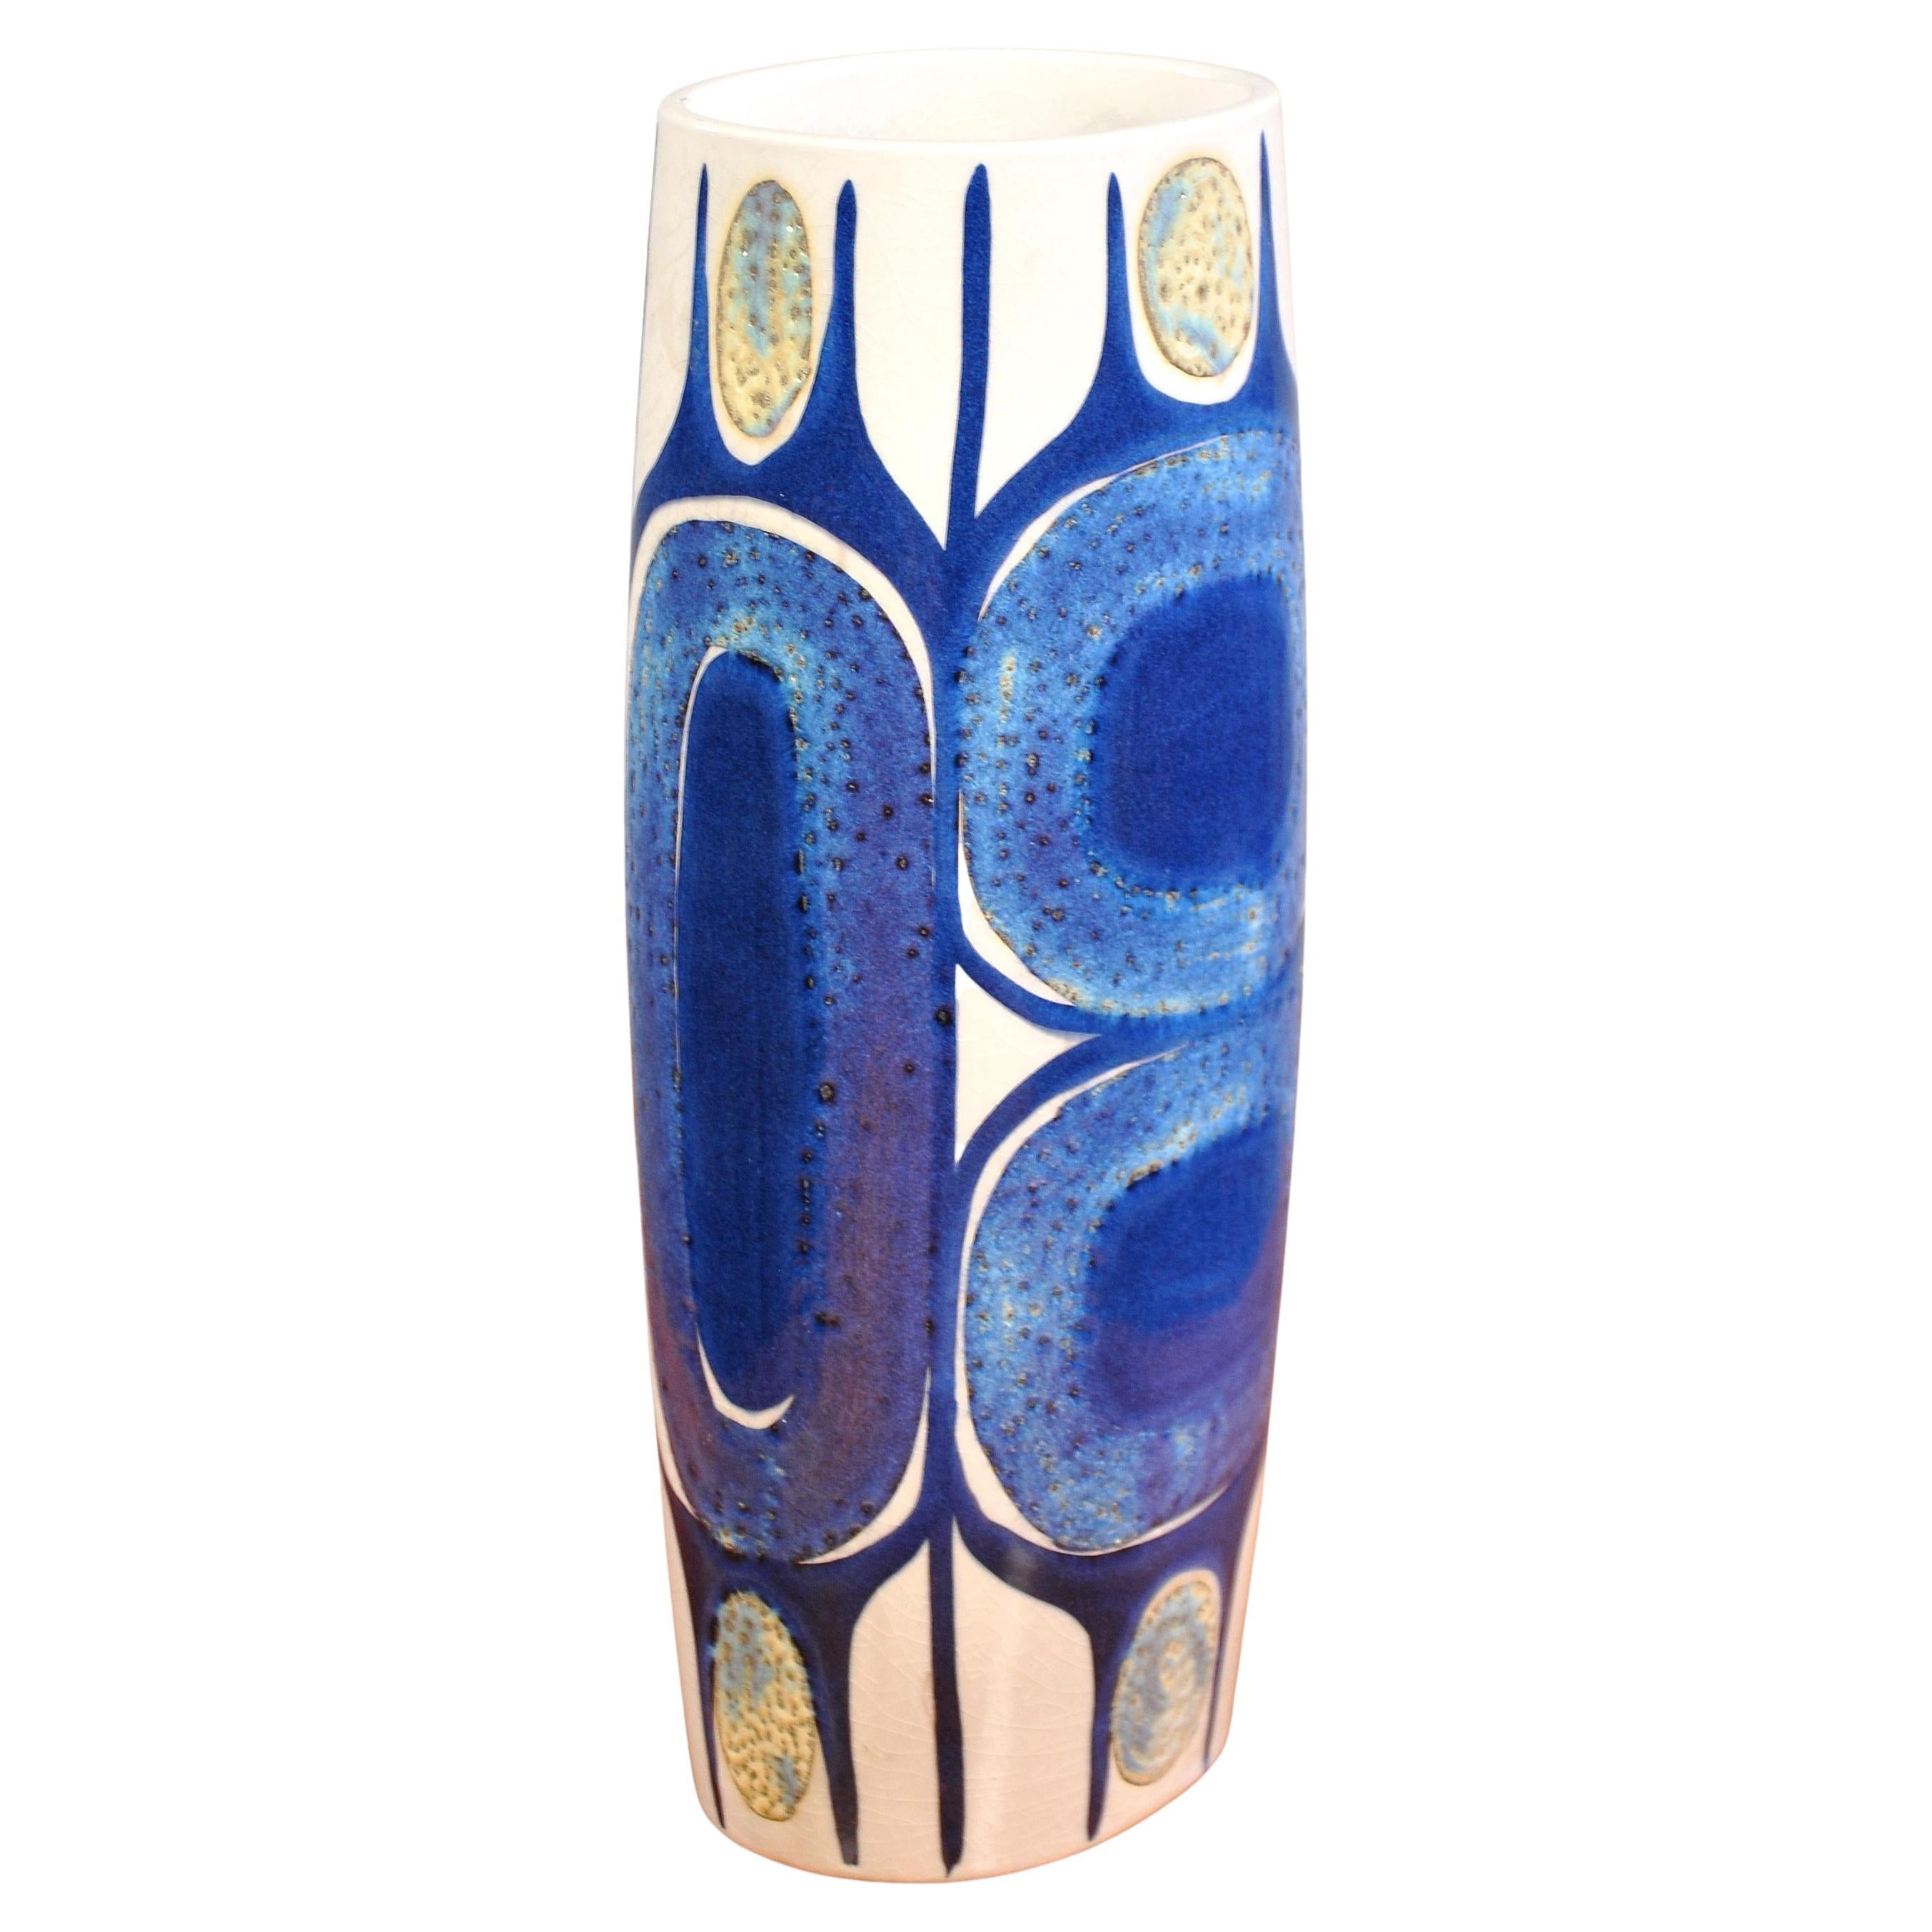 Cet exquis vase Danish Modern de la ligne Tenera de Royal Copenhagen (Aluminia) a été conçu par Inge-Lise Koefoed dans les années 1960. Le vase en céramique émaillée présente des motifs peints à la main dans des tons de bleu profond, de violet, de